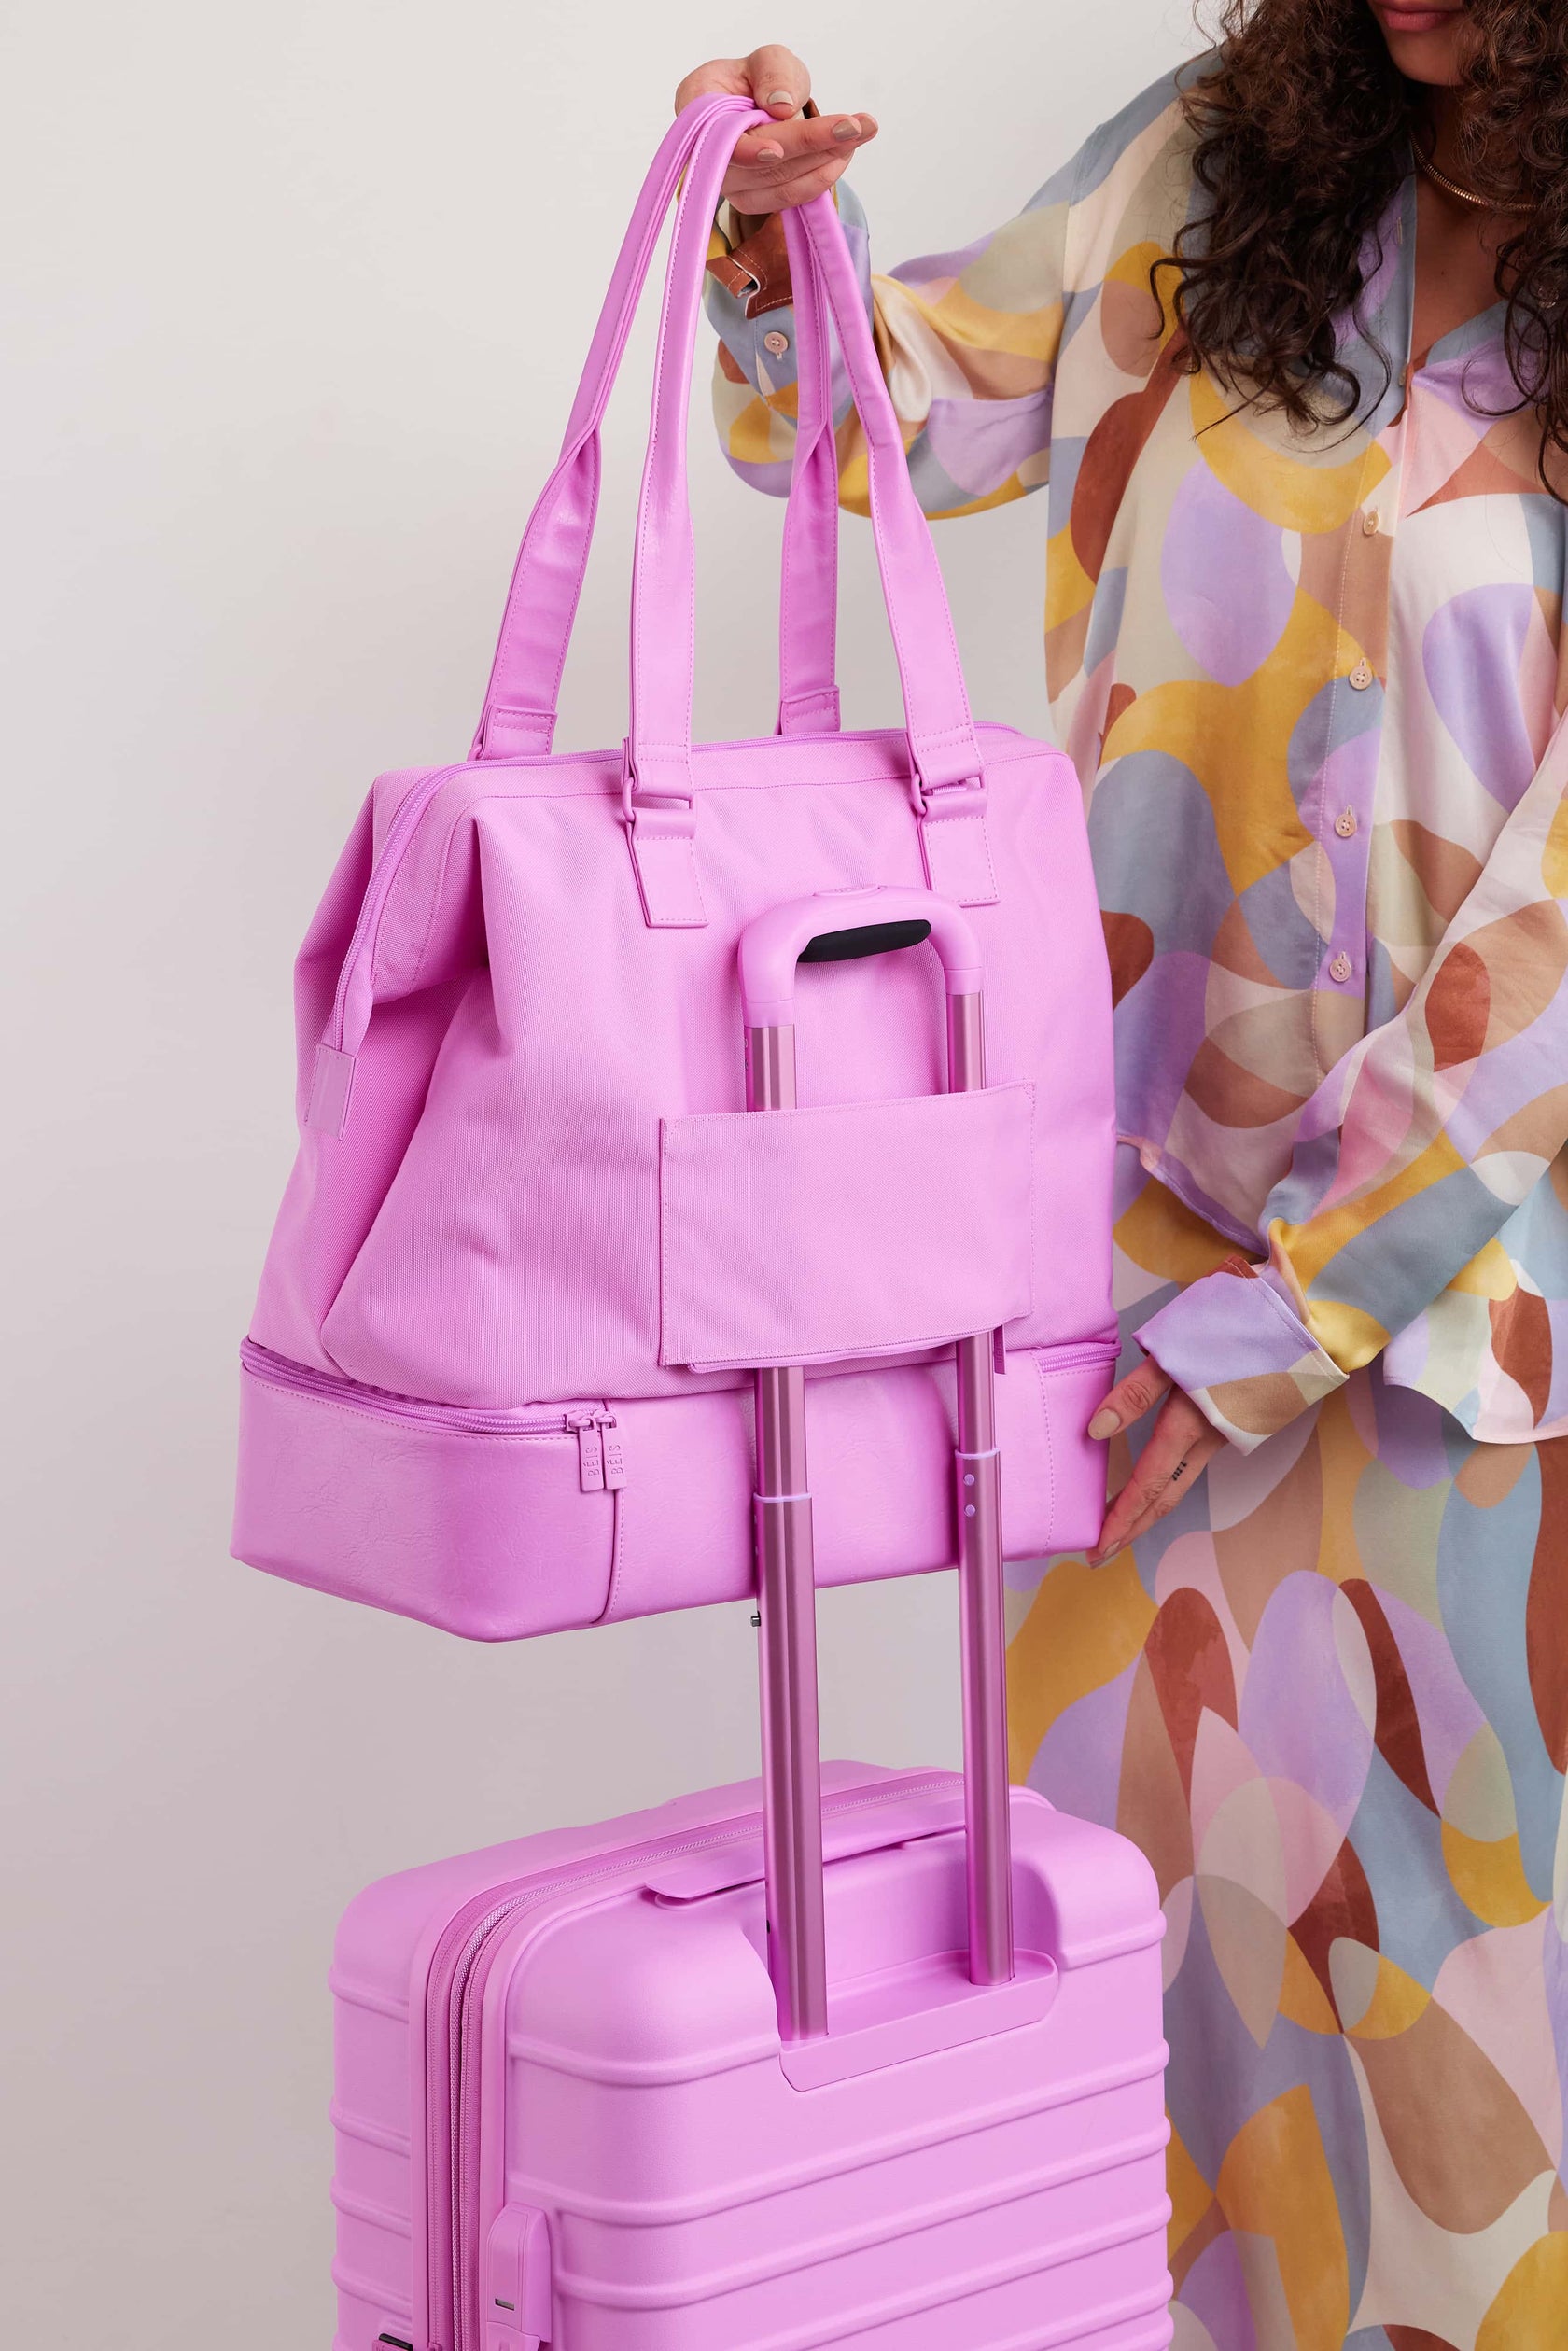 BÉIS 'The Mini Weekender' in Berry - Purple Small Weekend Bag ...